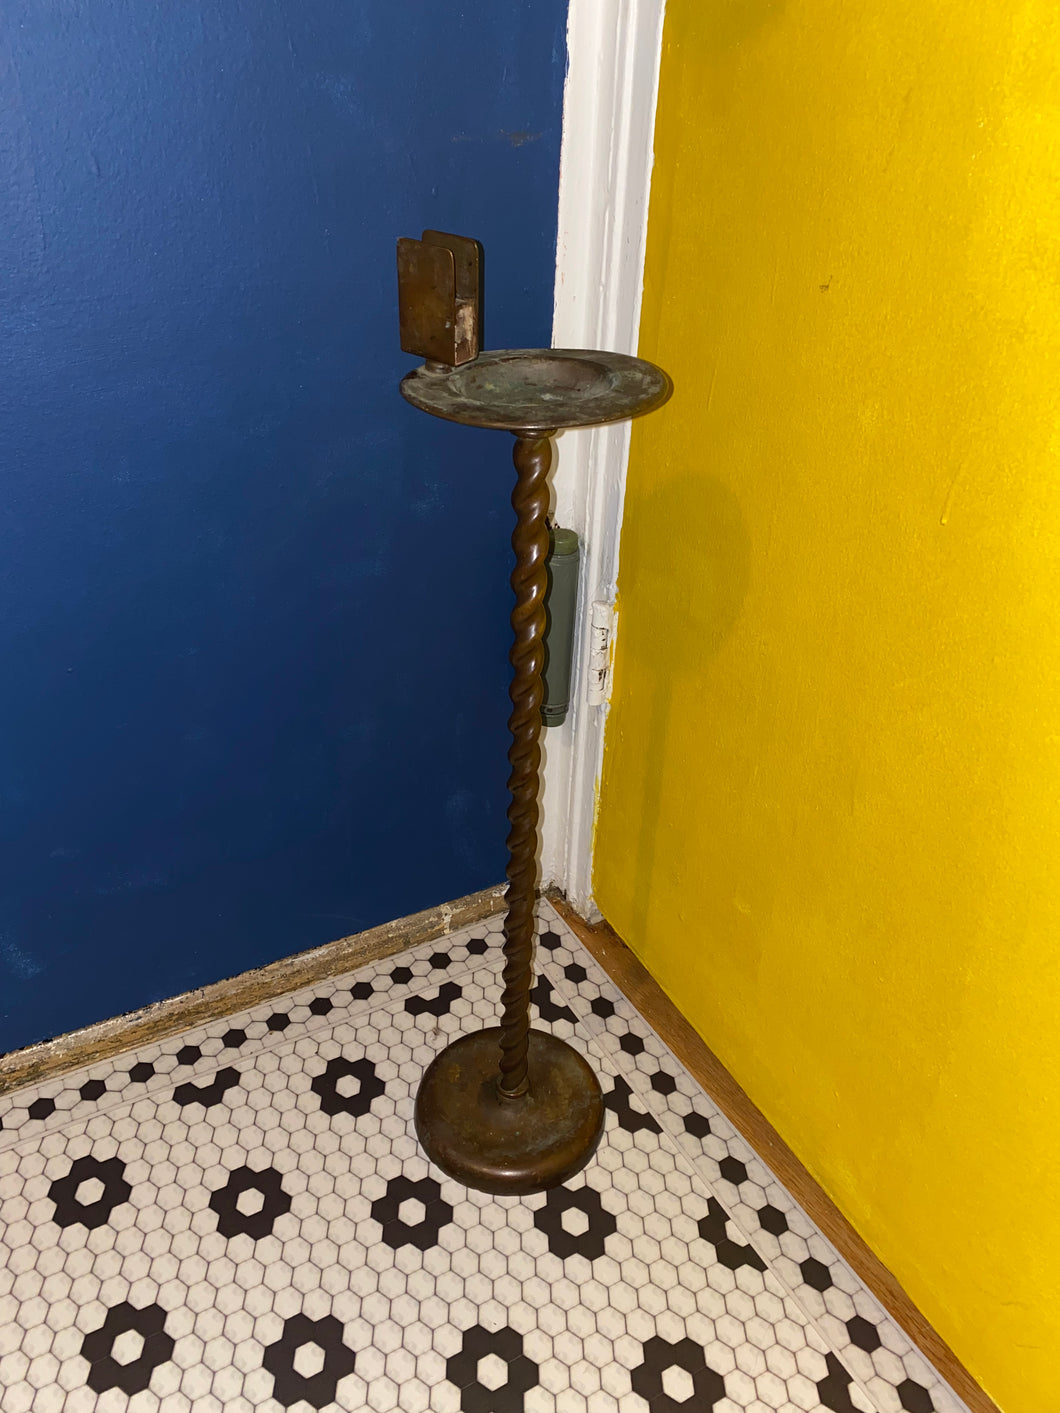 Vintage Copper Standing Ashtray with matchbox holder / cig holder